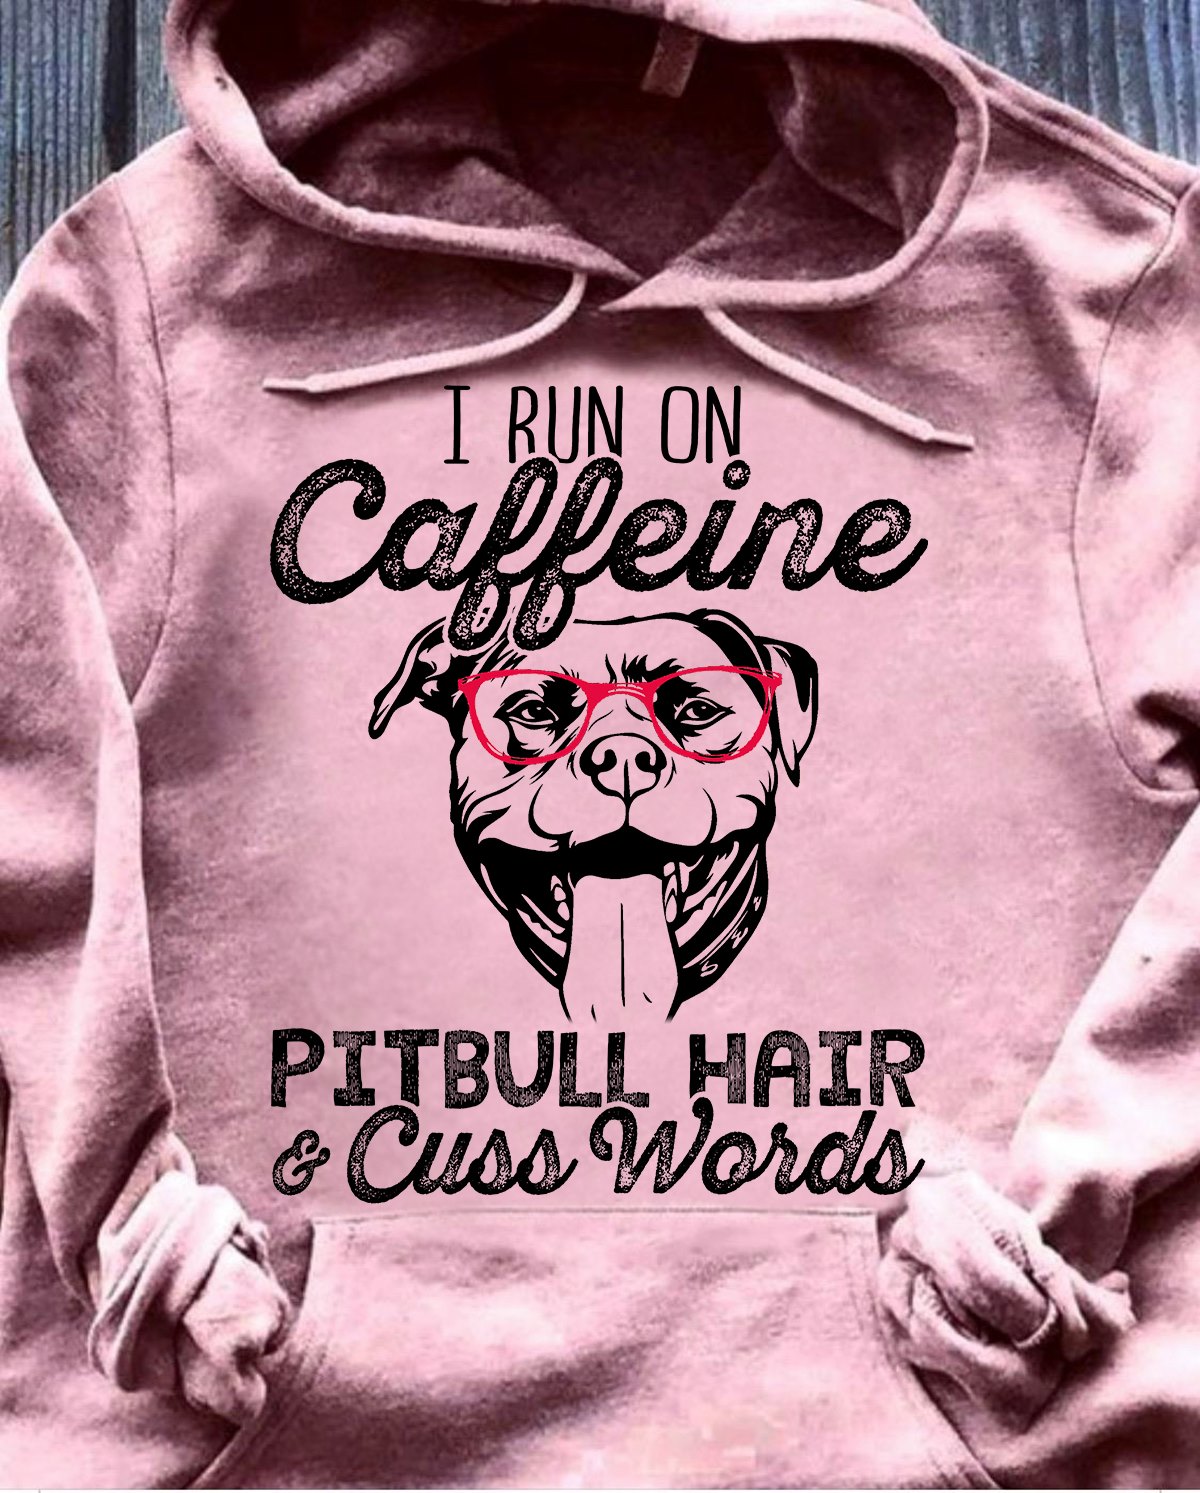 I run on caffeine pitbull hair and cuss words - Pitbull dog lover